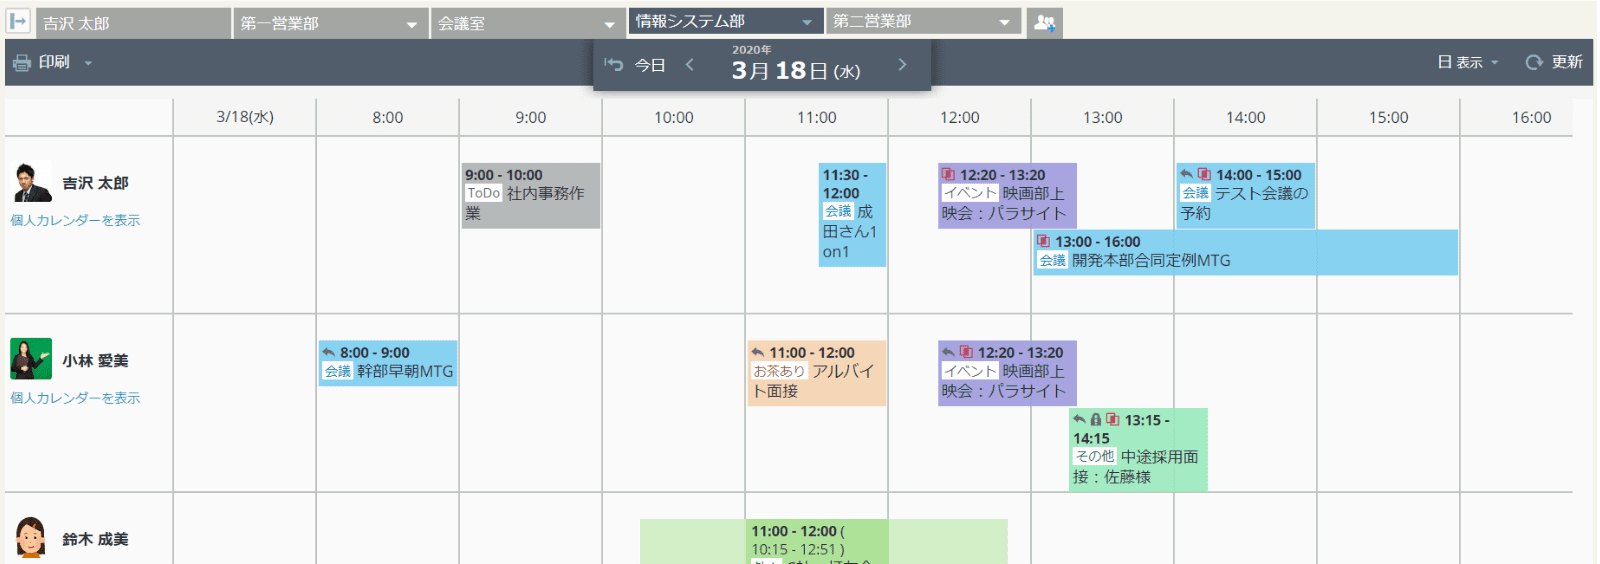 rakumo カレンダー 日表示